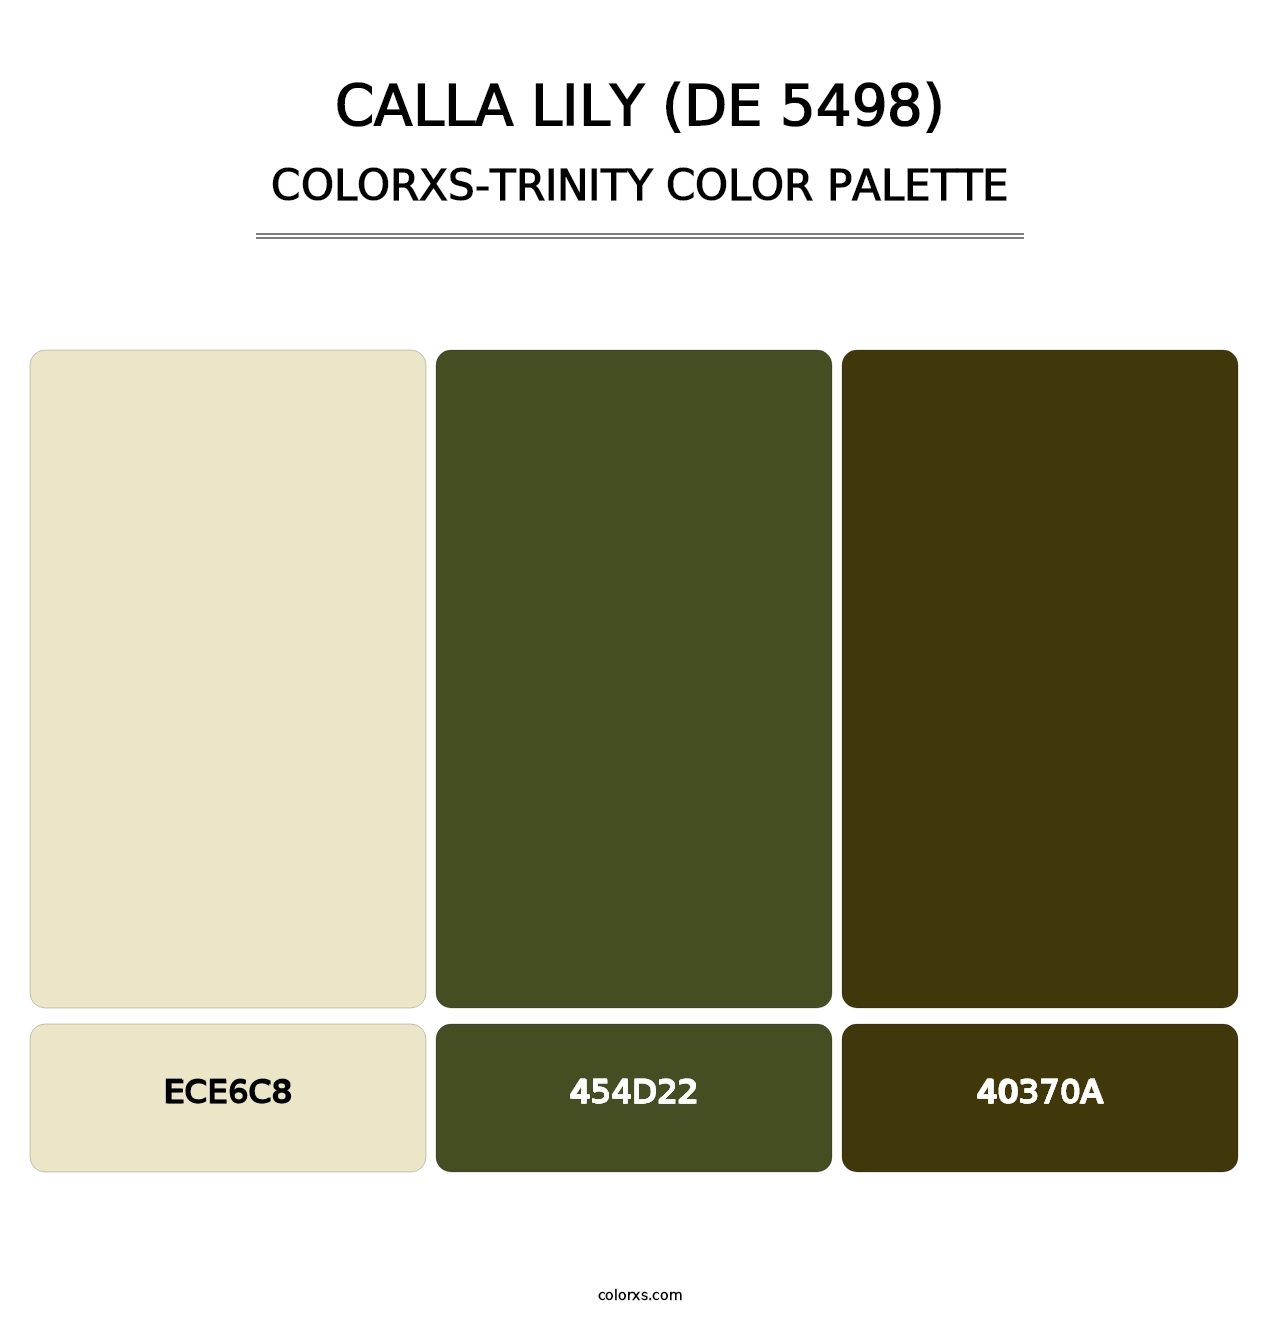 Calla Lily (DE 5498) - Colorxs Trinity Palette